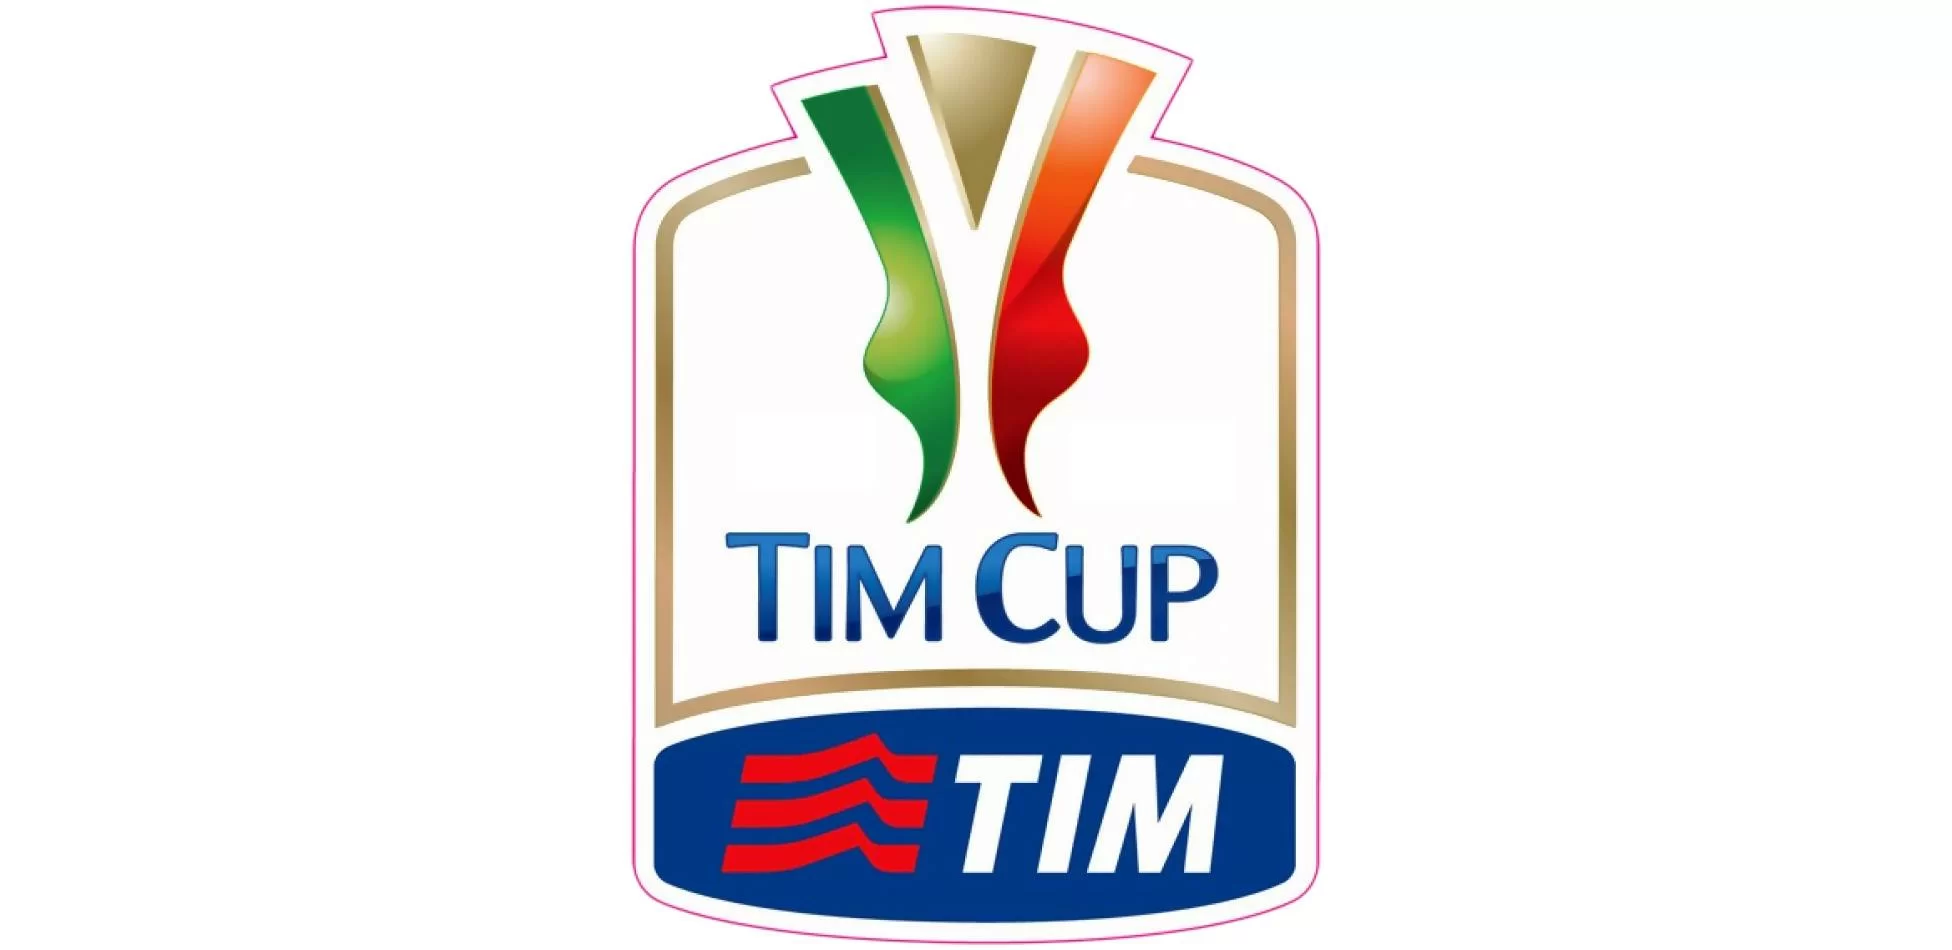 Coppa Italia, alle 15 il sorteggio del tabellone